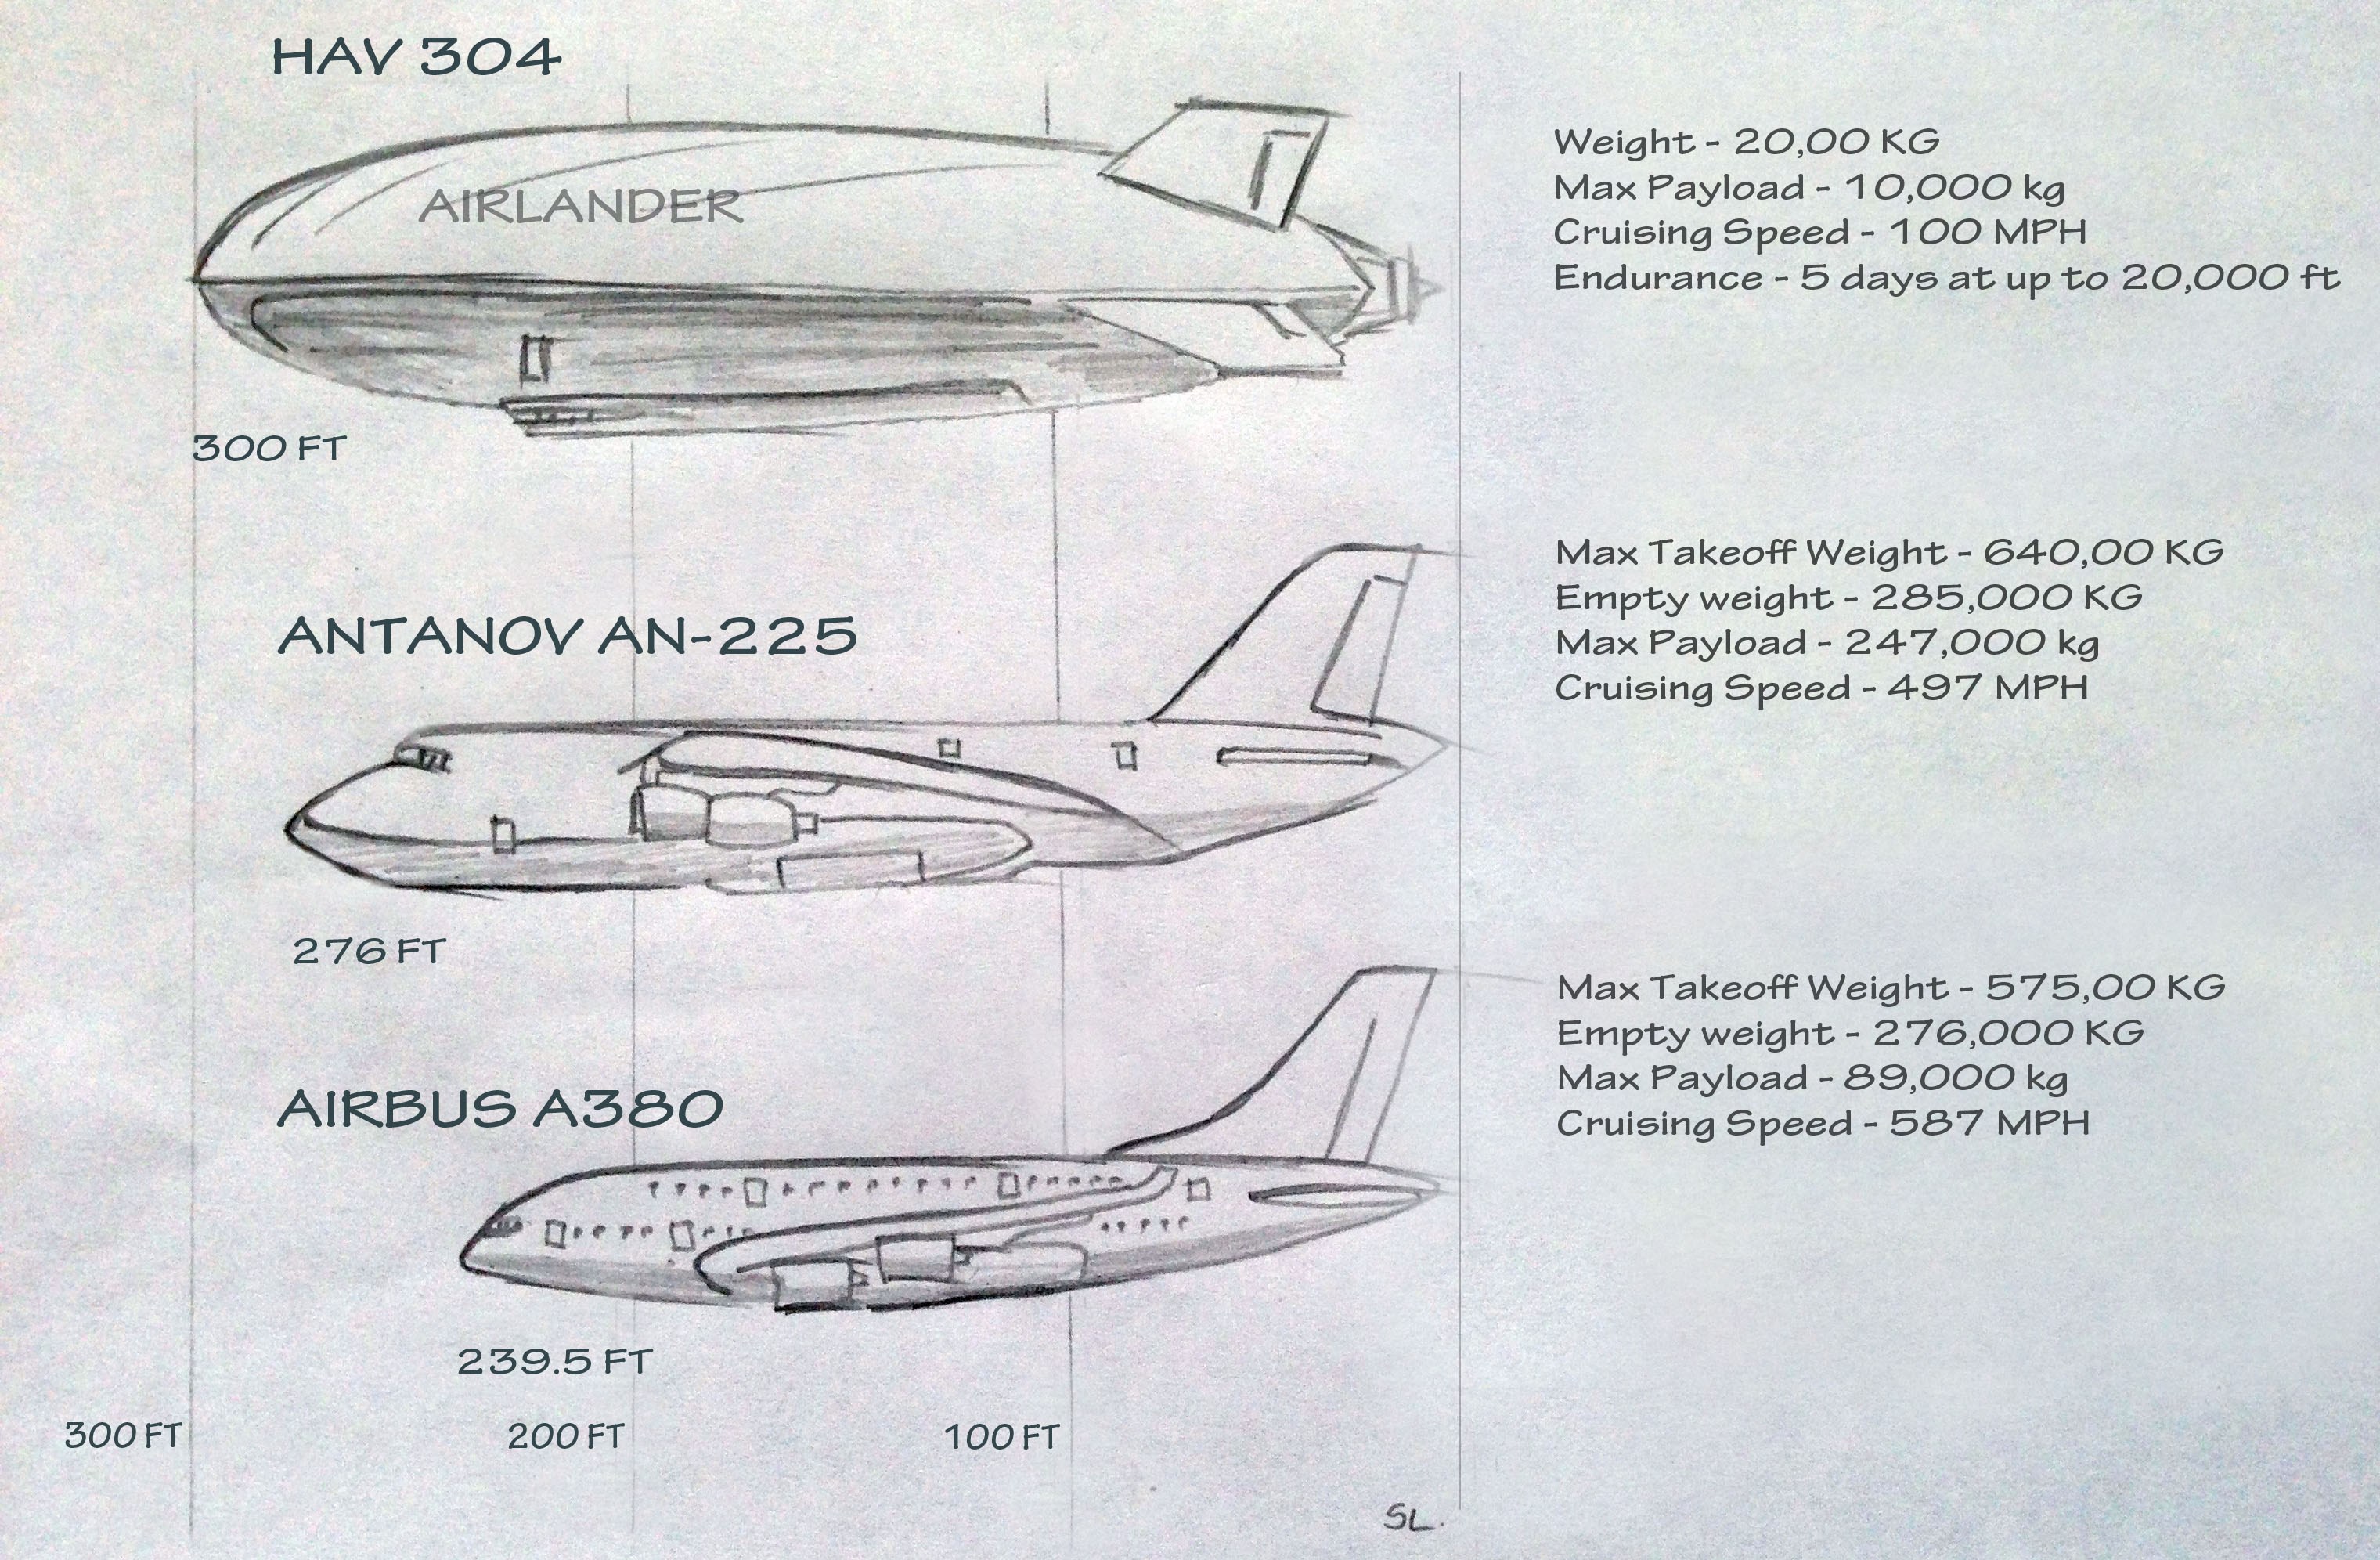 相比之下,空客a380的长度只有近73米,但重量却达到前者的138倍